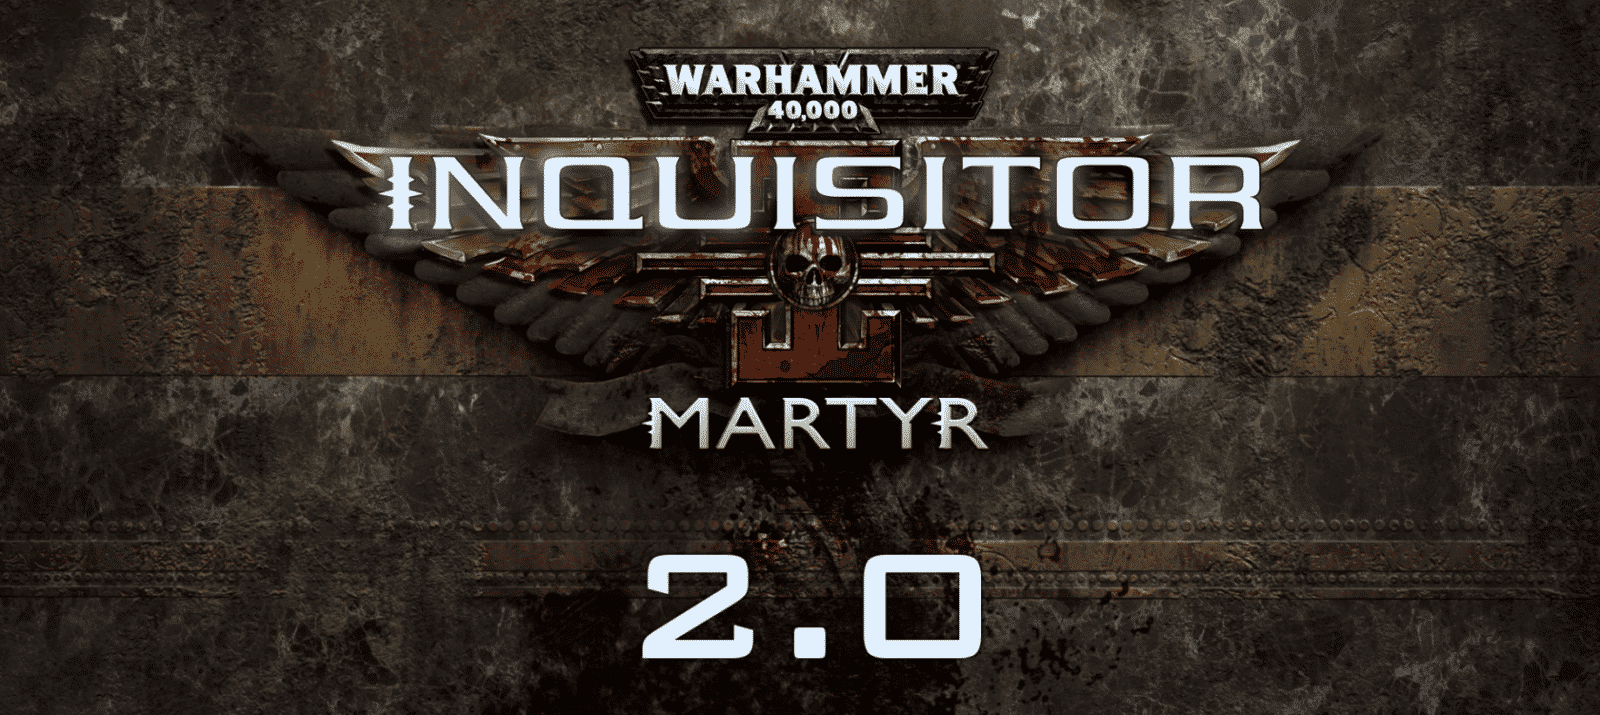 Warhammer Inquisitor Martyr 2.0